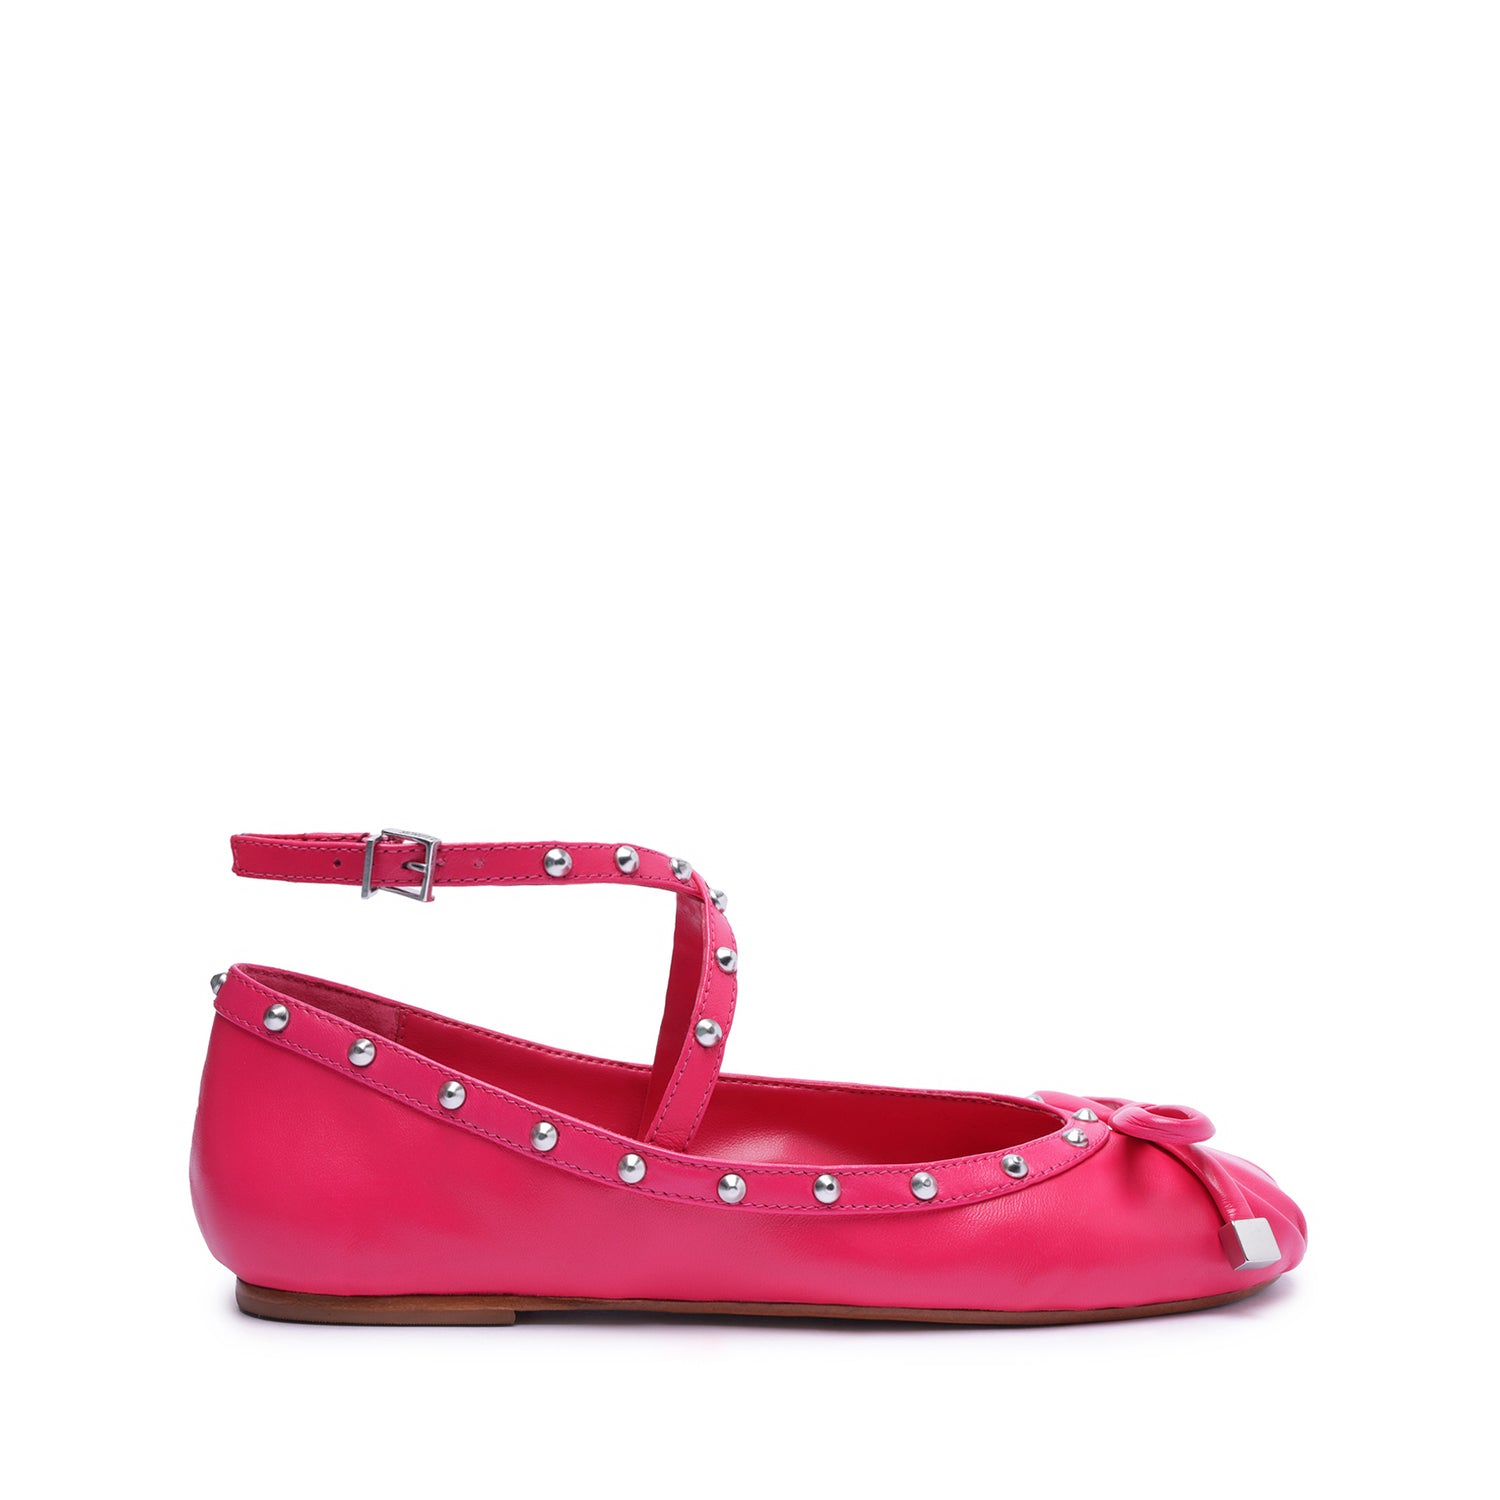 Larissa Nappa Leather Flat Flats FALL 23 5 Paradise Pink Nappa Leather - Schutz Shoes